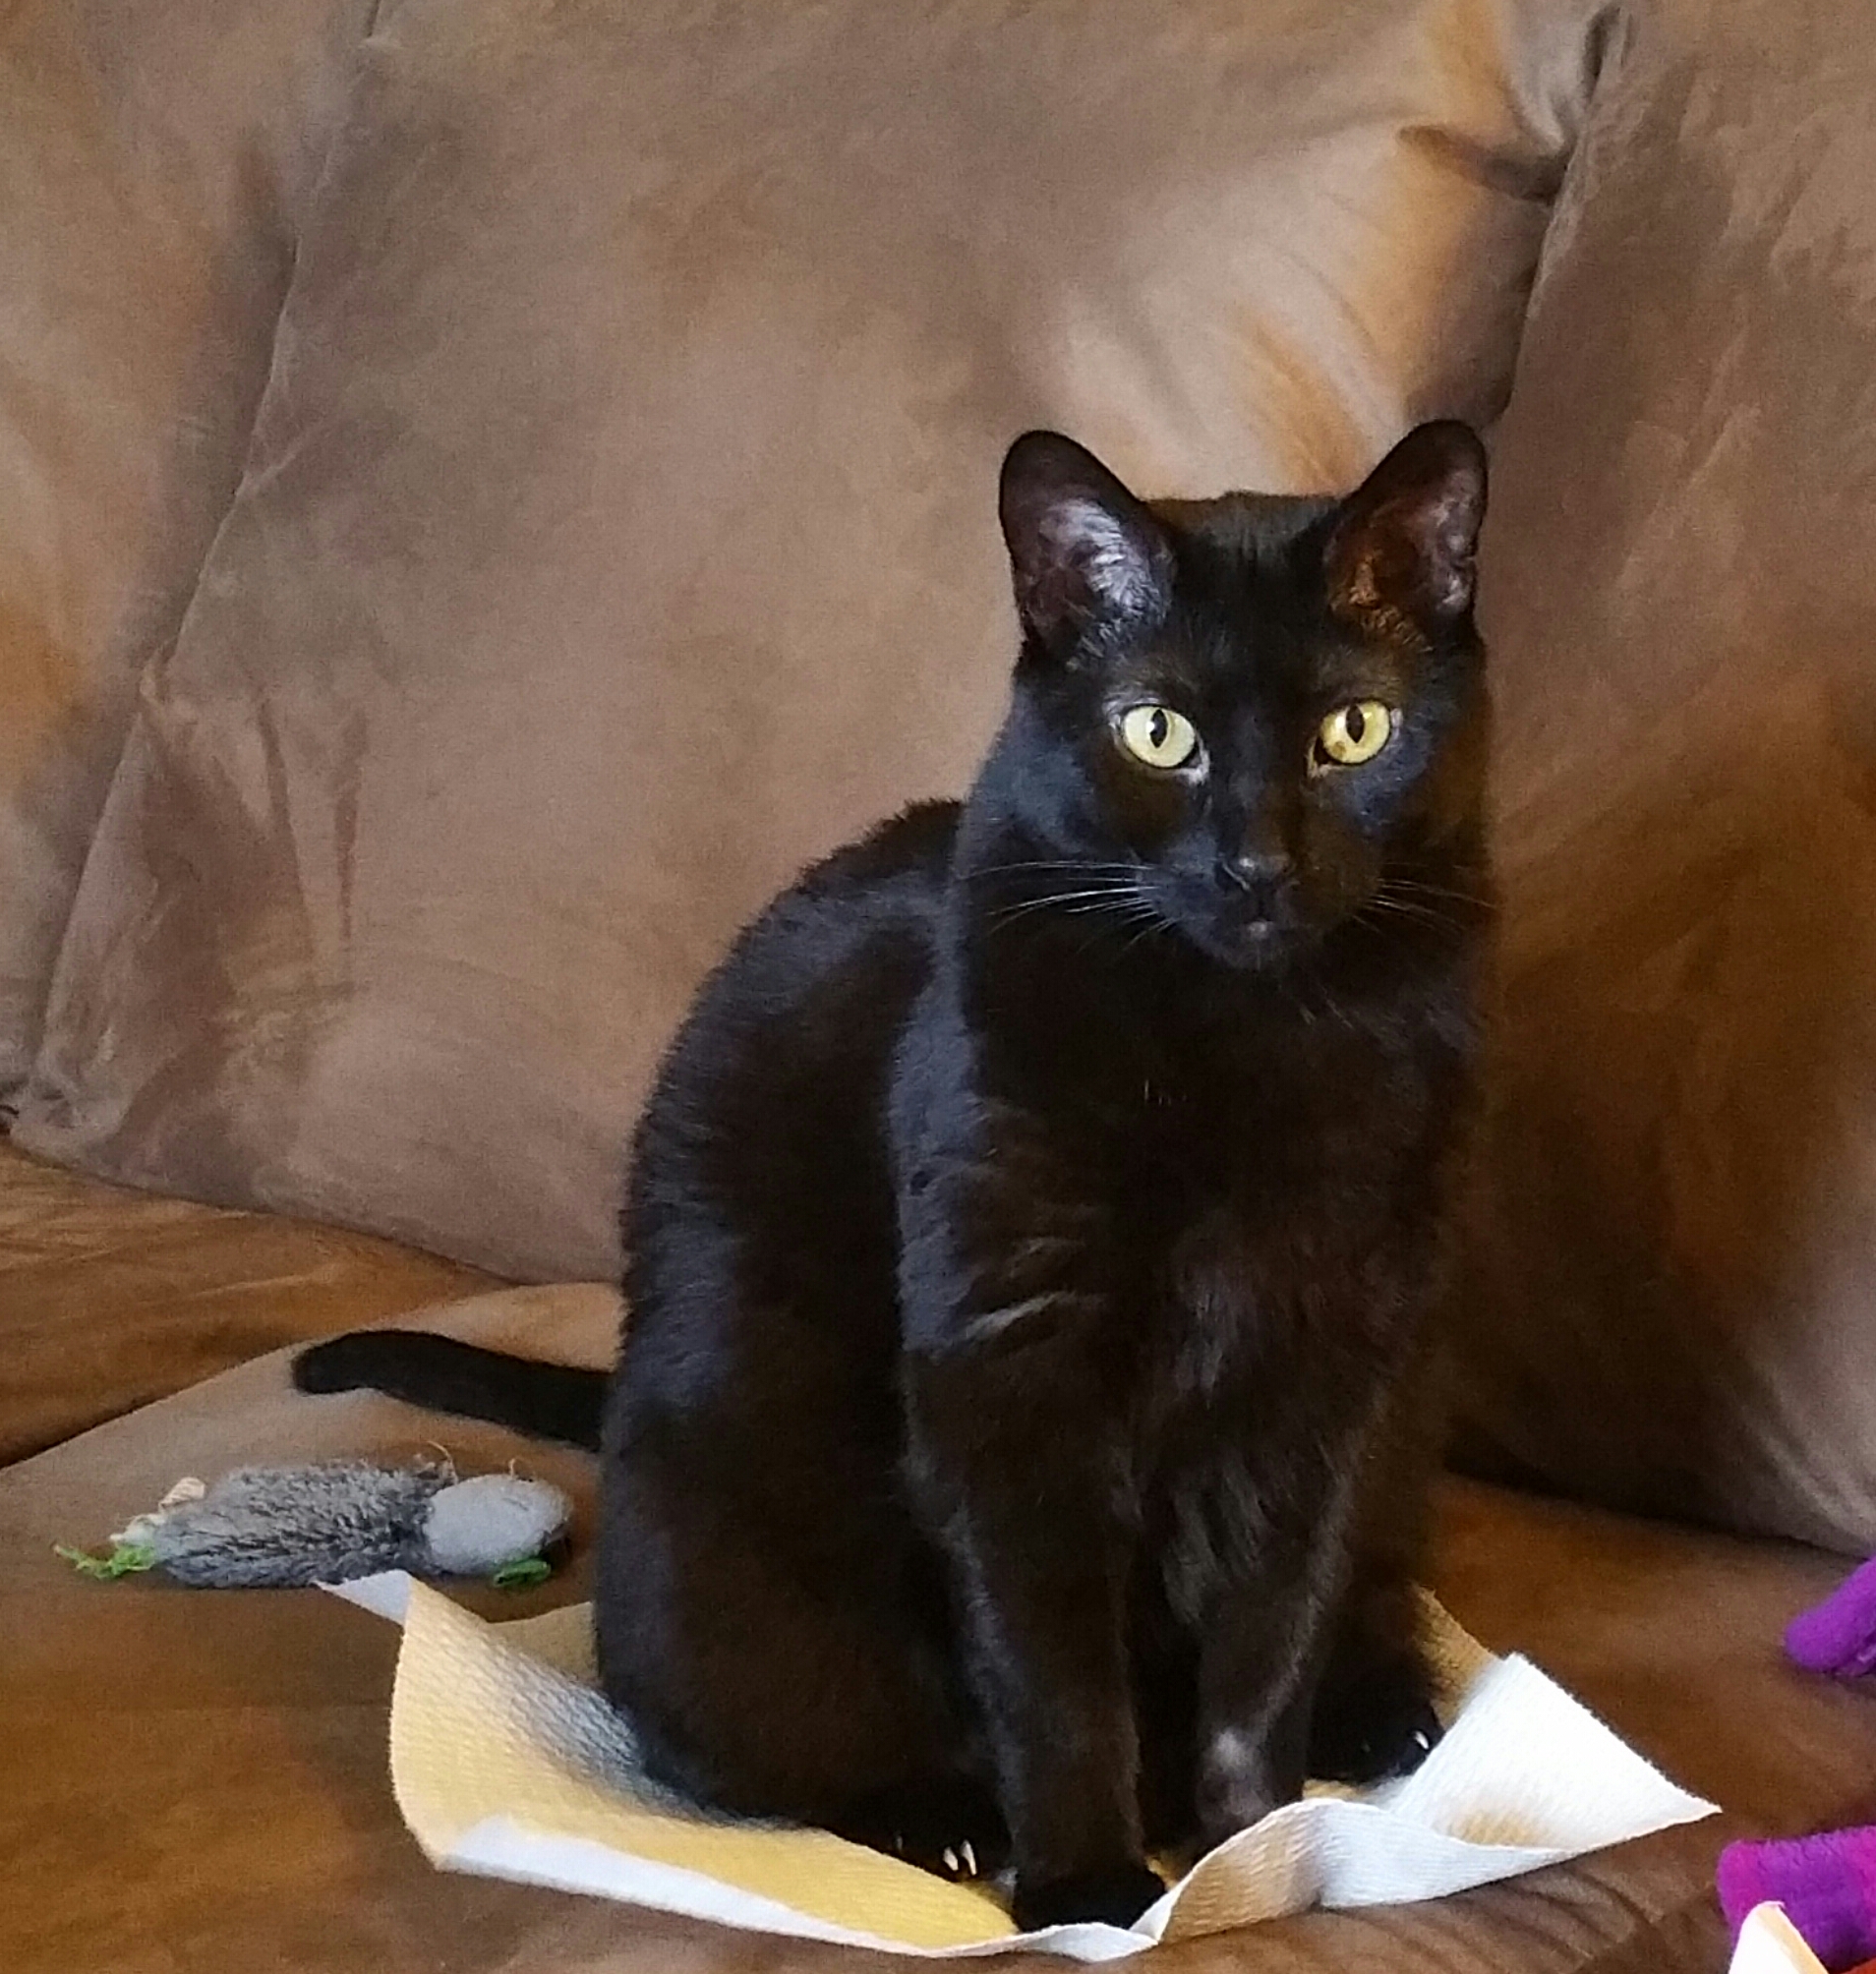 Black Cats are the best - Gorgeous Simon's Cat fans' cats!